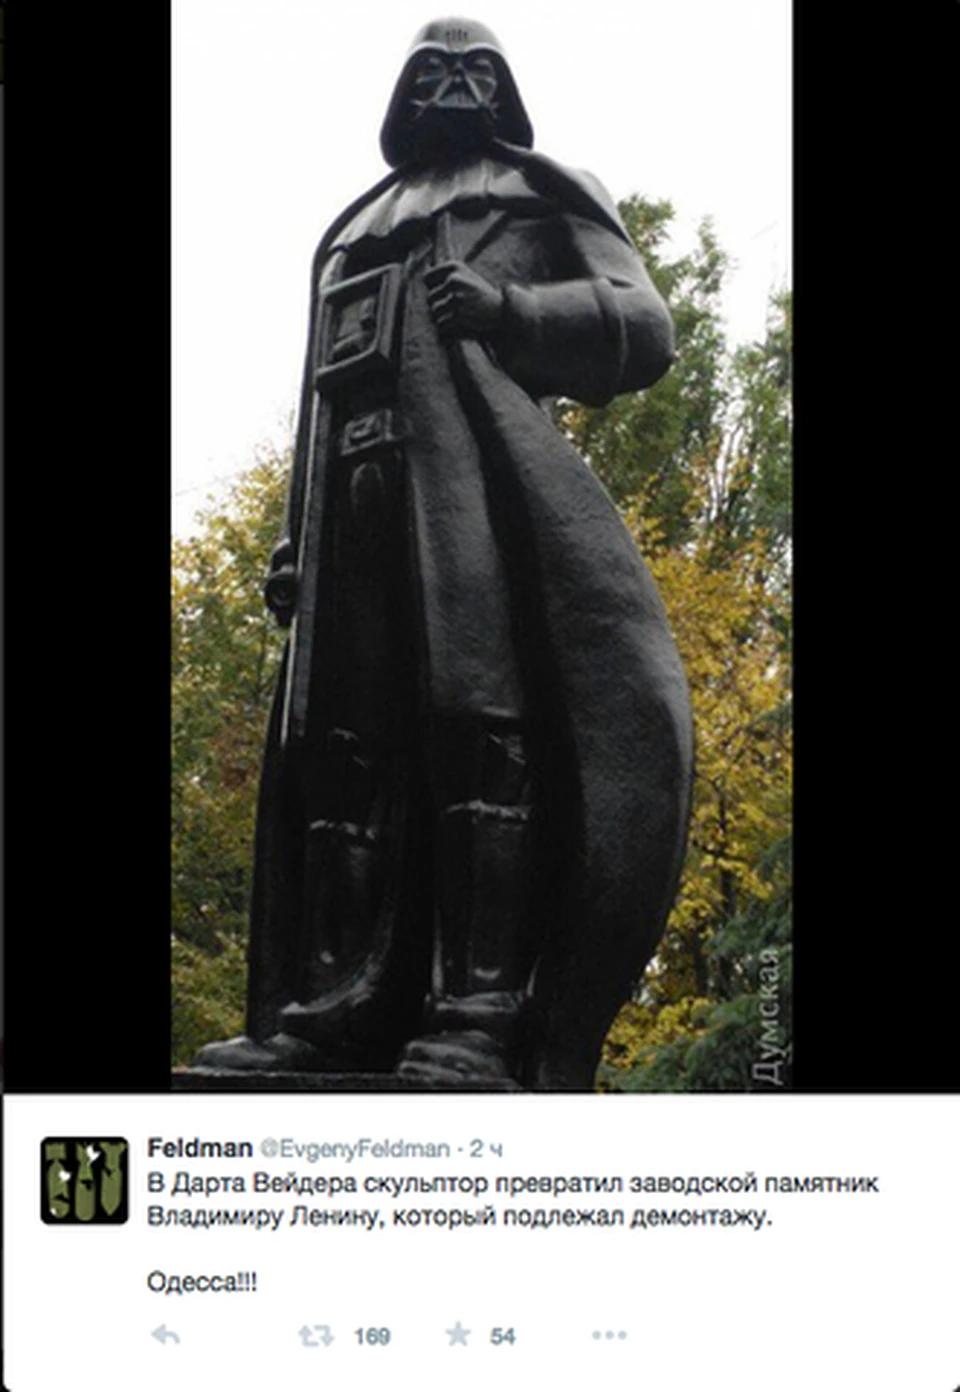 Одесский художник "надел" на Ленина доспехи и шлем
Фото из Твиттера @EvgenyFeldman